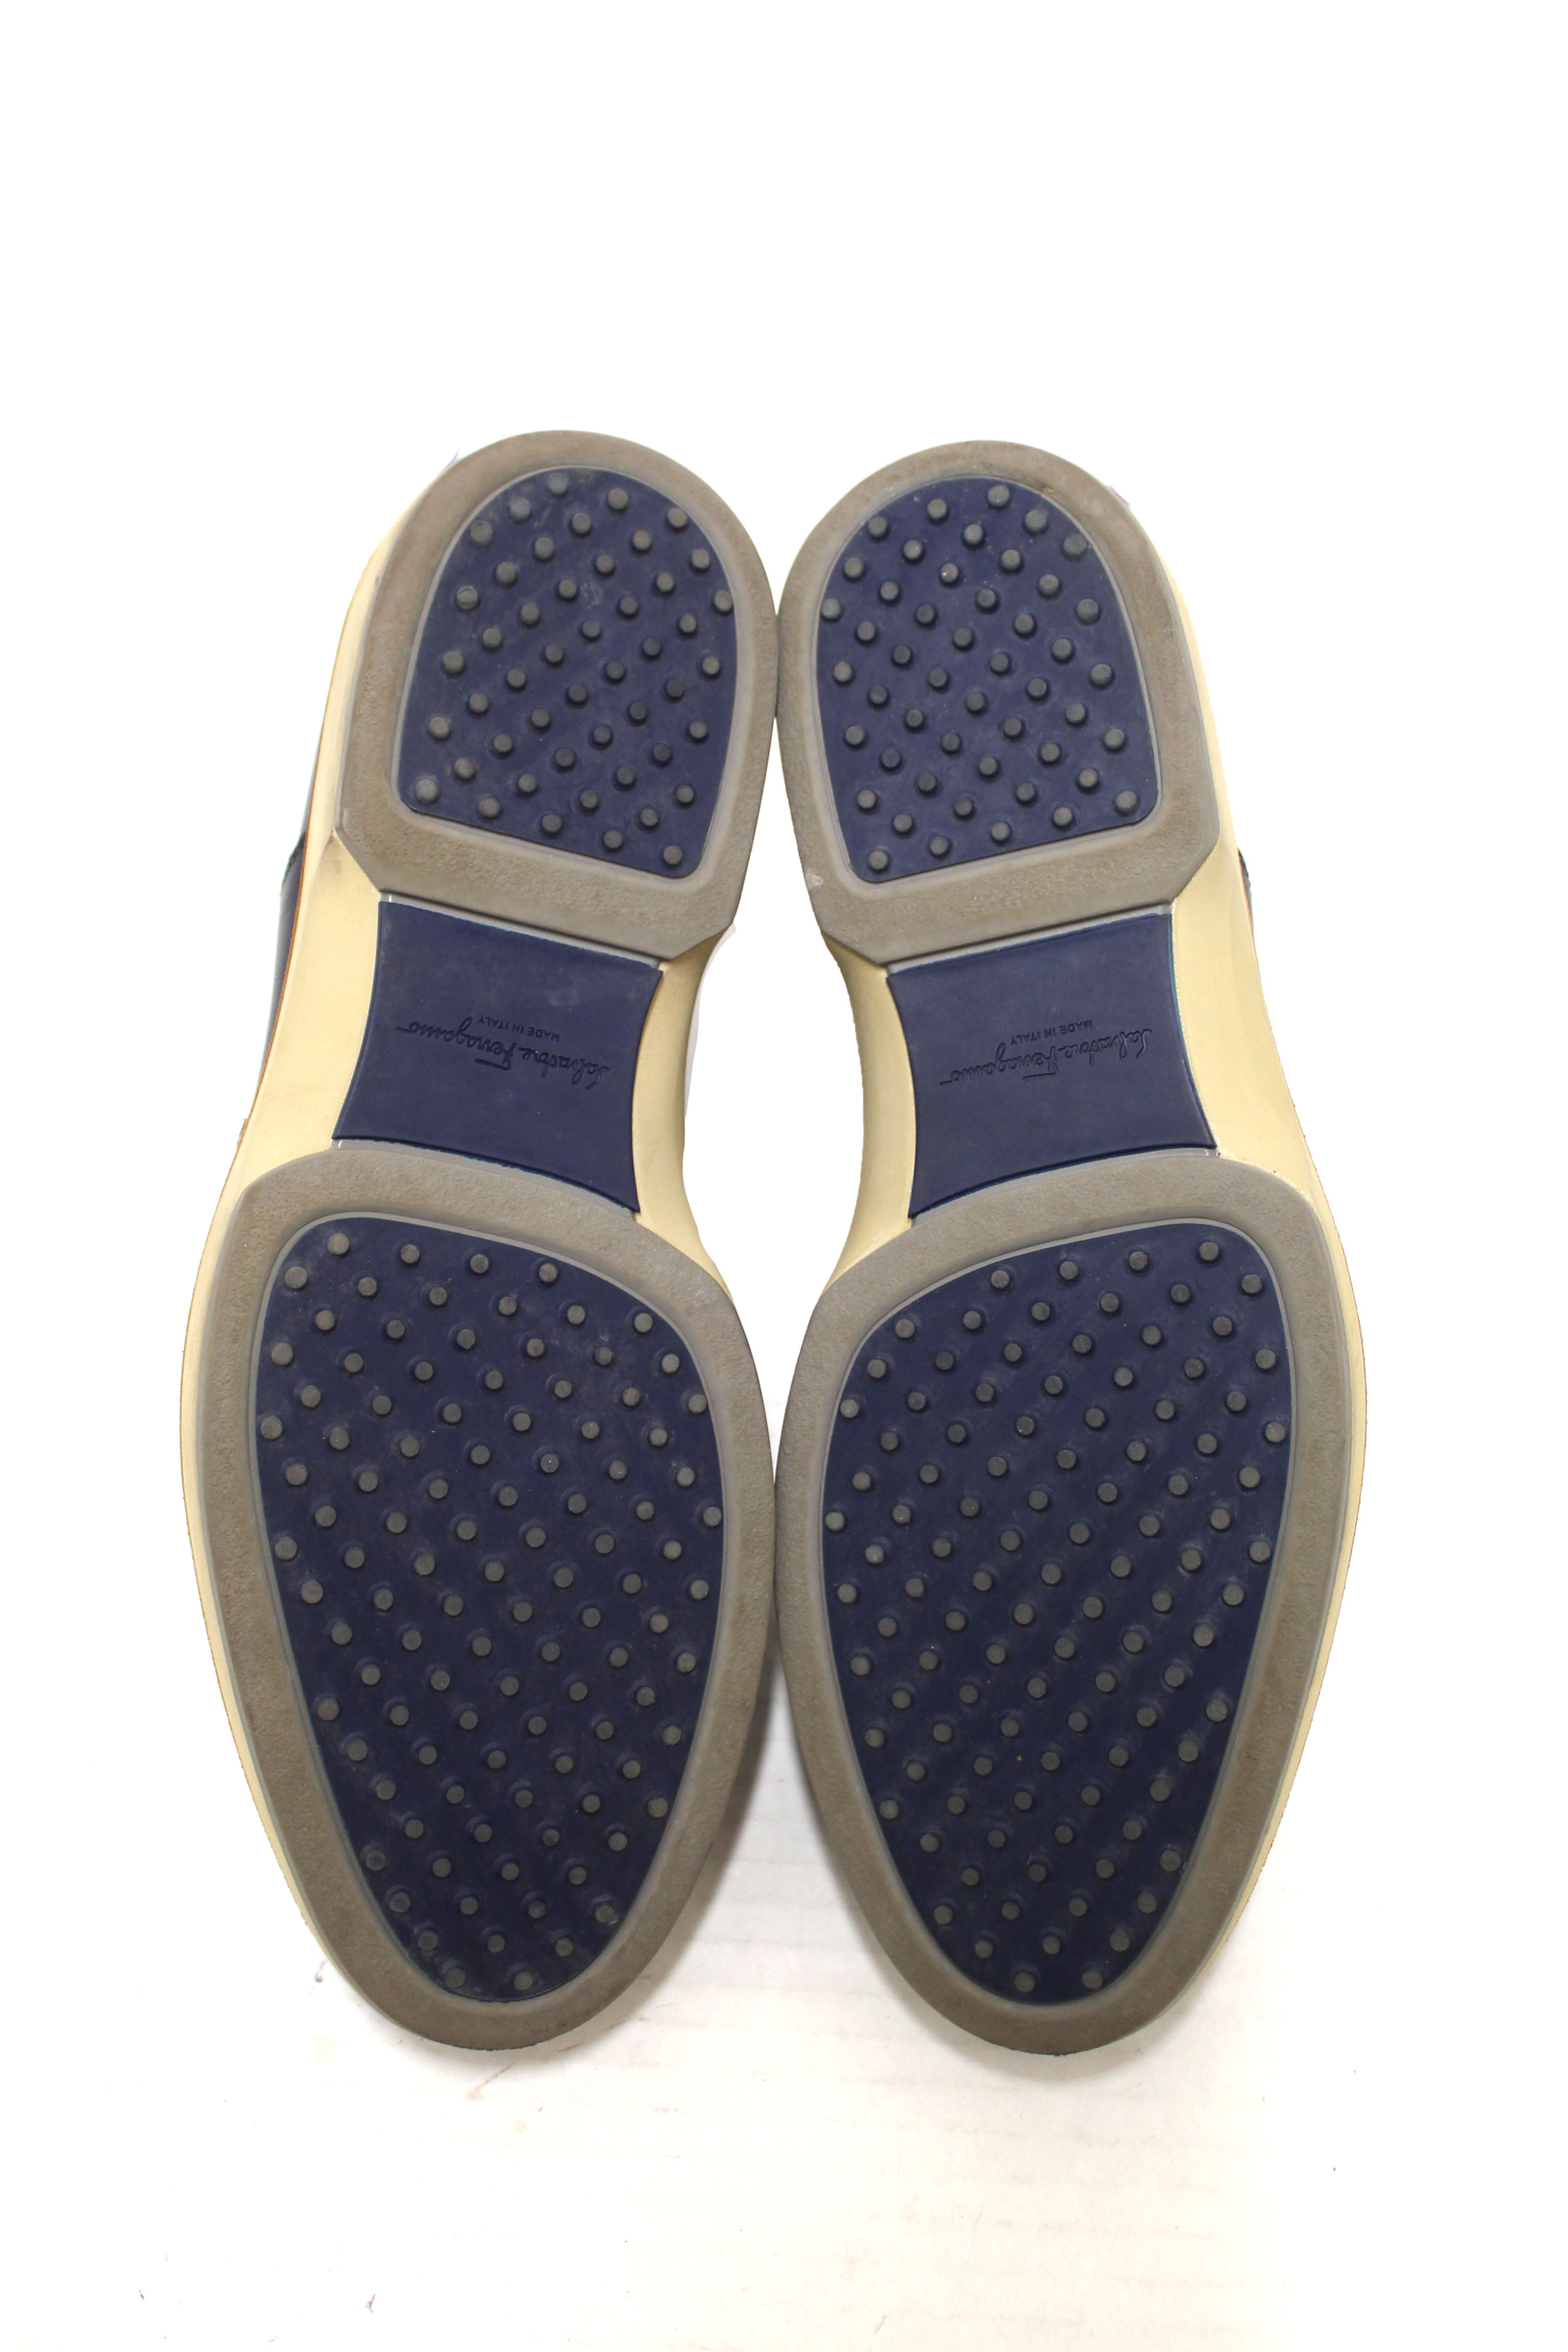 Authentic Salvatore Ferrgamo Men's Blue Calf Leather Wingtip Brogue Shoes size 8.5